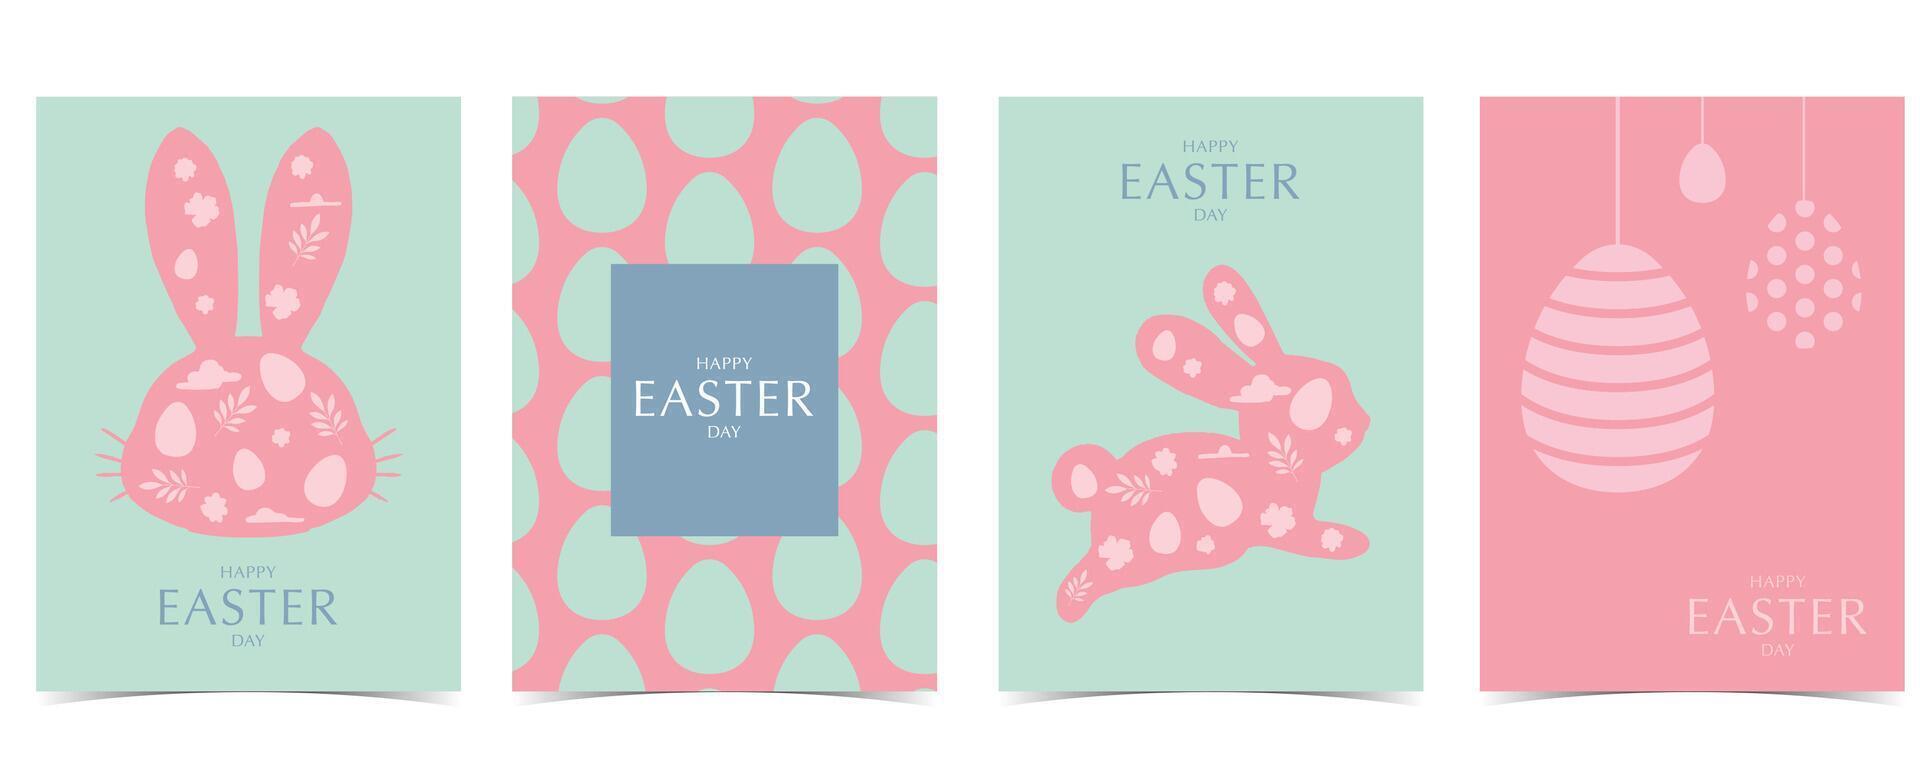 Sammlung von Ostern Hintergrund einstellen mit Hase und Ei im Silhouette Stil editierbar Vektor Illustration zum a4 Vertikale Postkarte